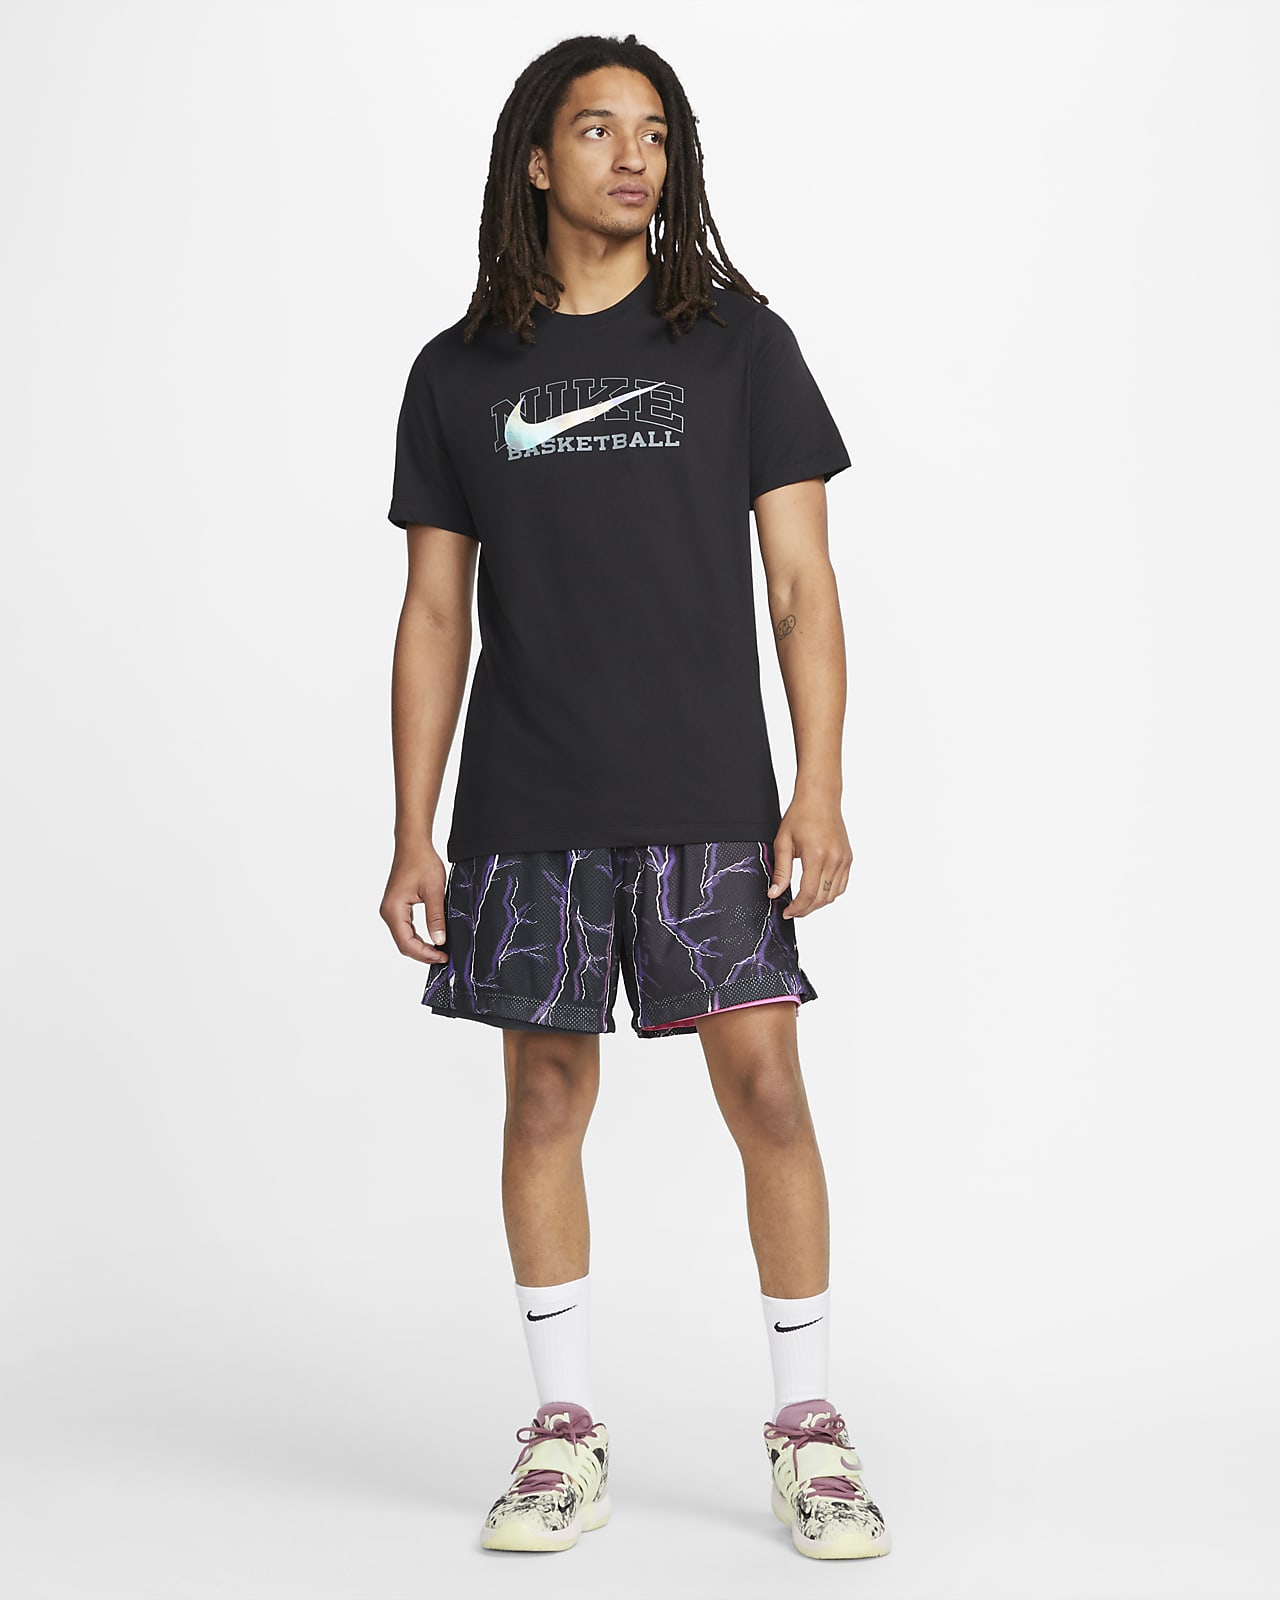 Nike, Shirts, Nike Usa Basketball Shirt Dri Fit Small